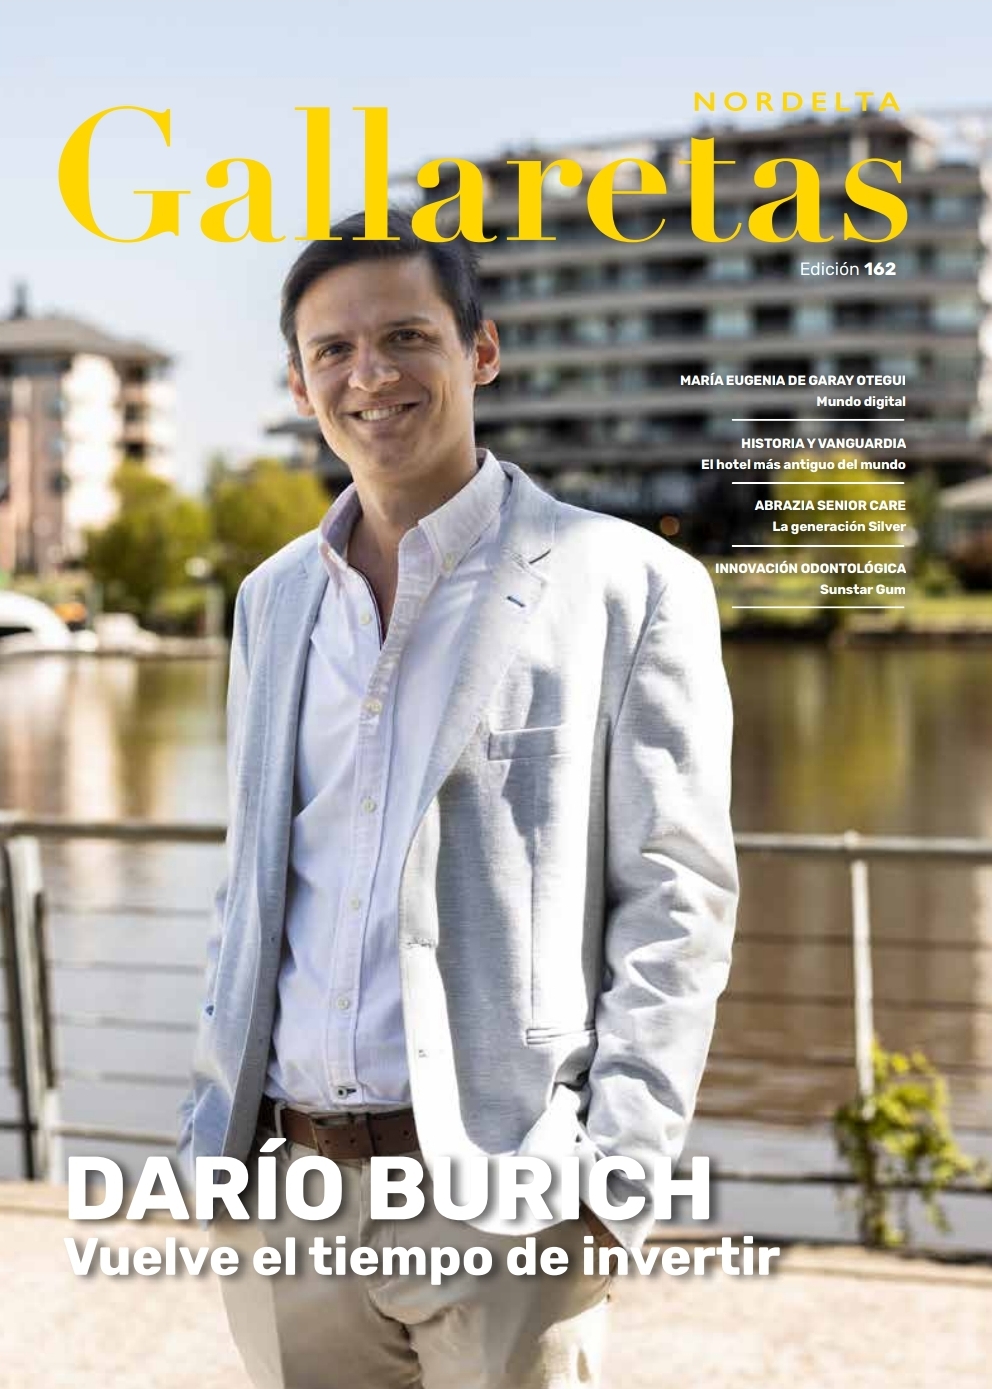 Darío Burich: Empresario e innovador del sector inmobiliario